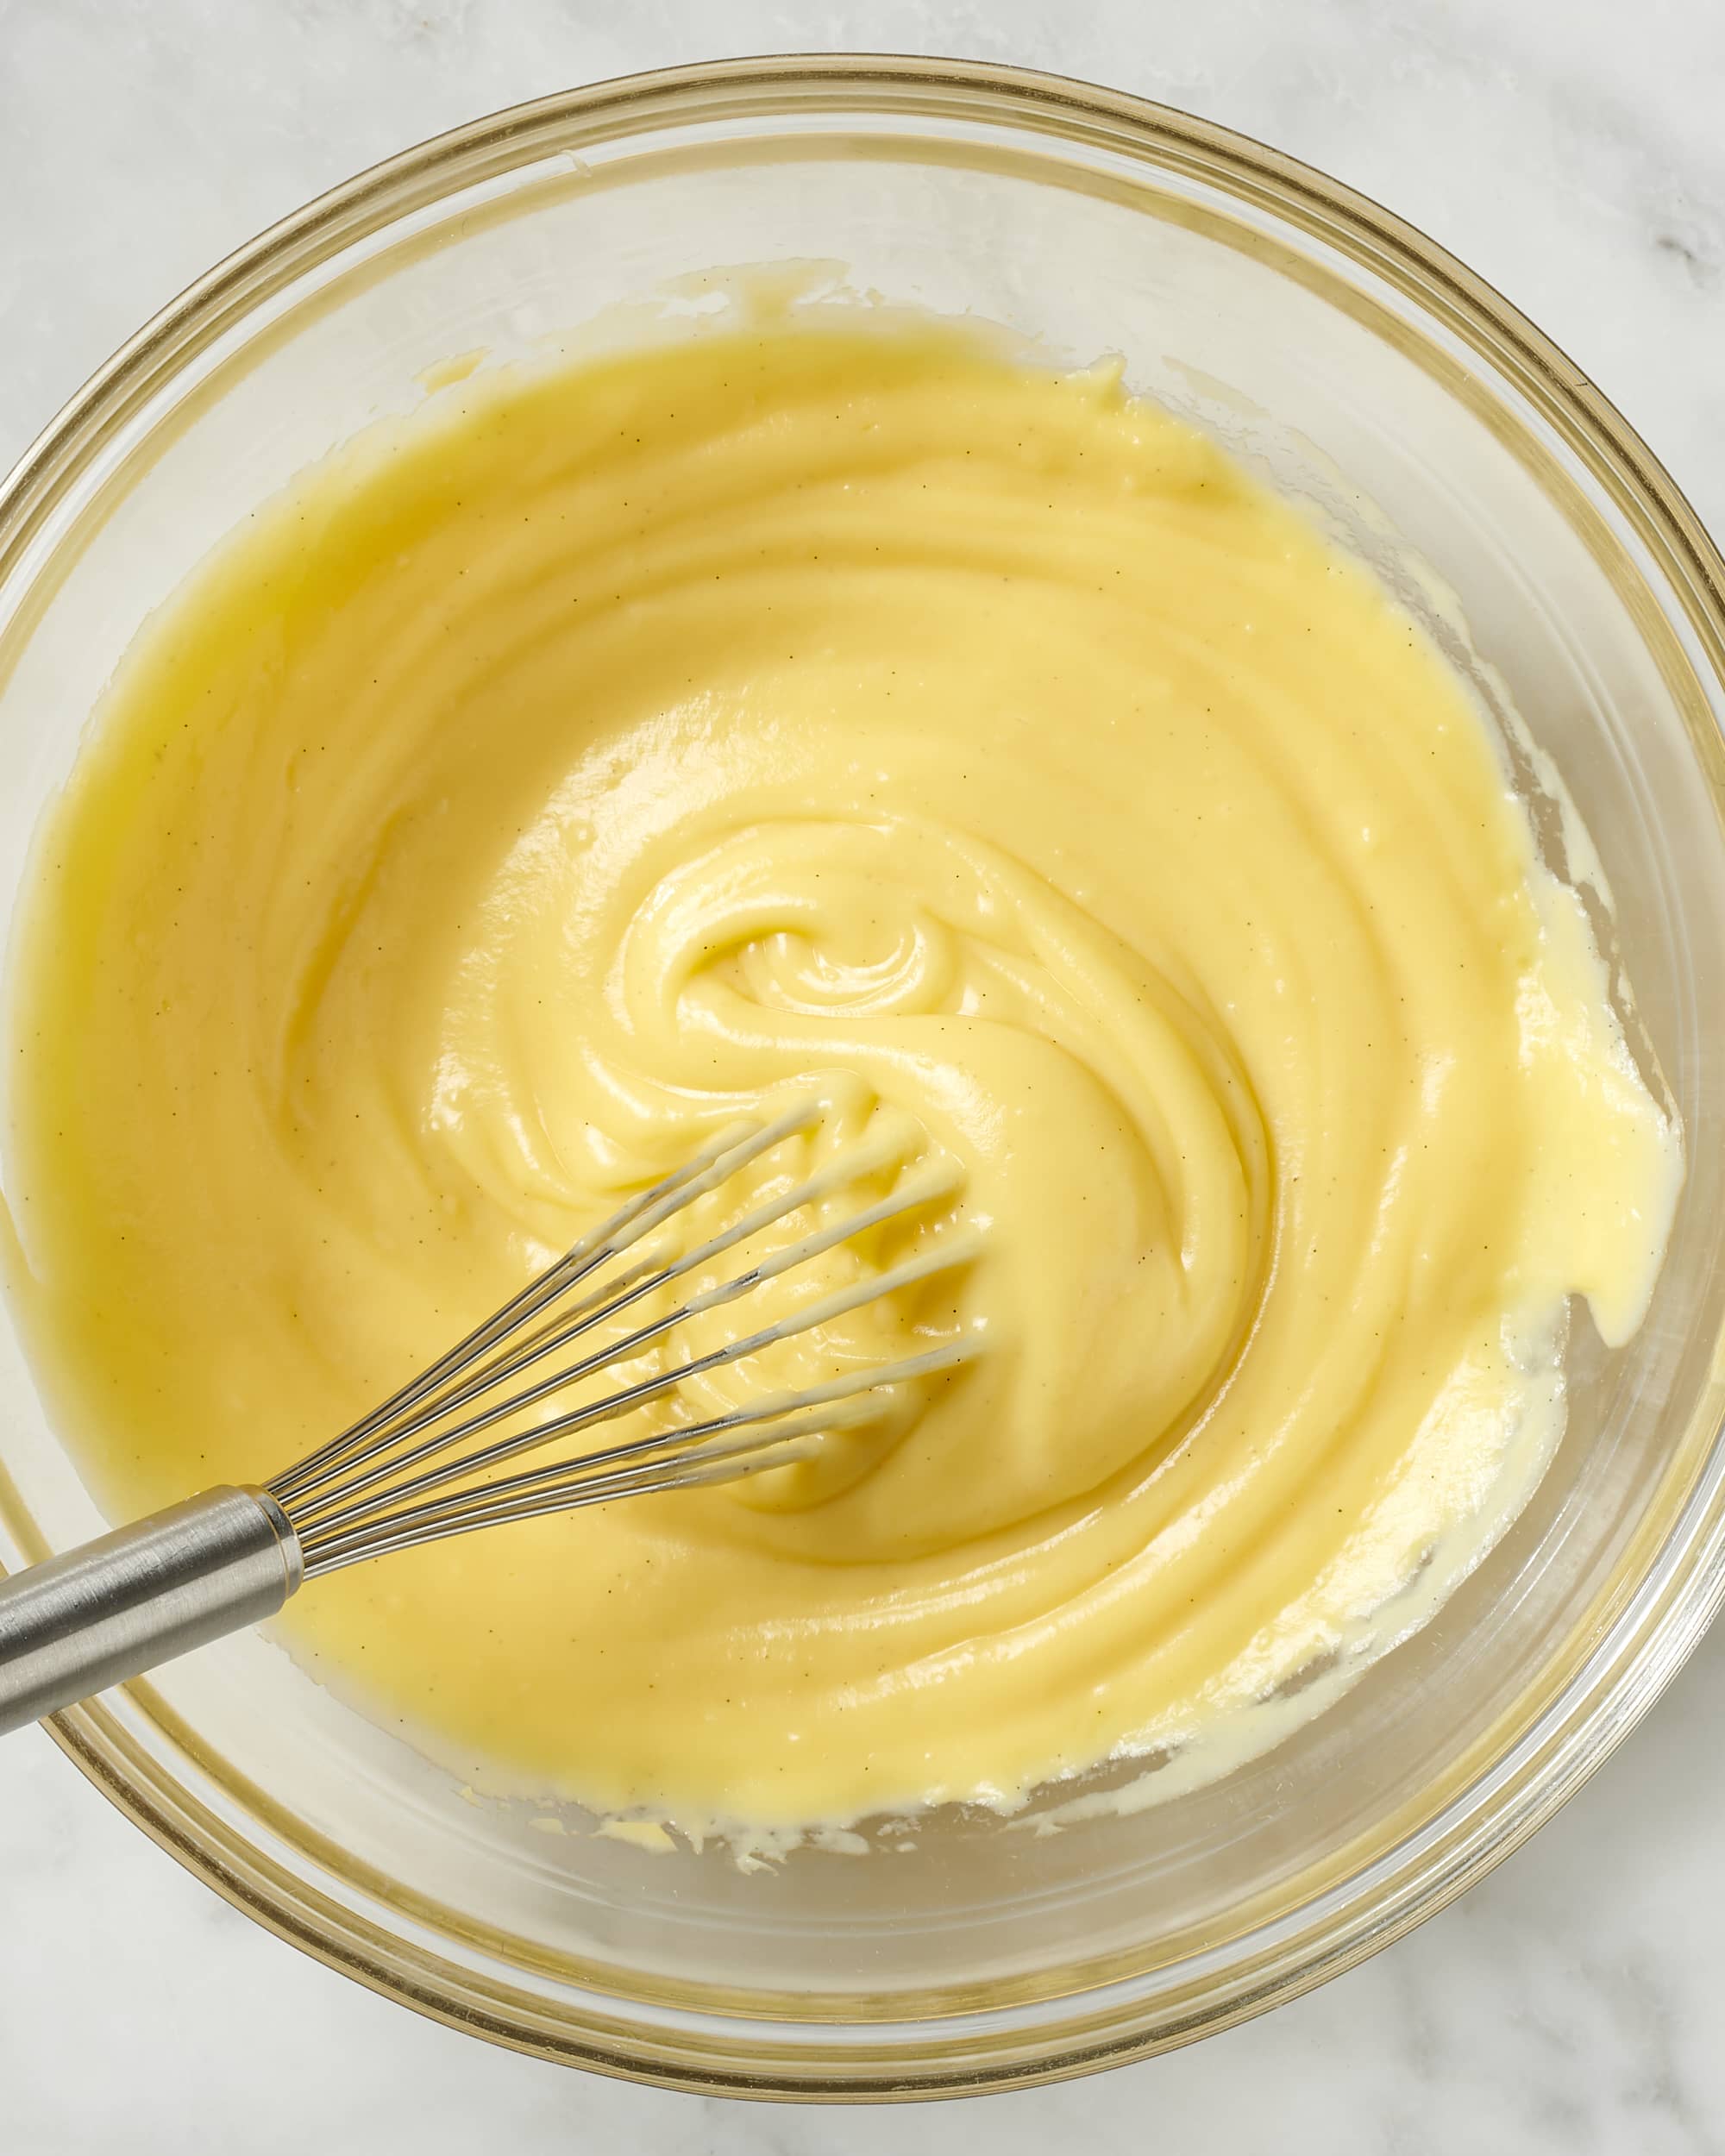 https://cdn.apartmenttherapy.info/image/upload/v1692633818/k/08-2023-how-to-make-pastry-cream/how-to-make-pastry-cream-716.jpg